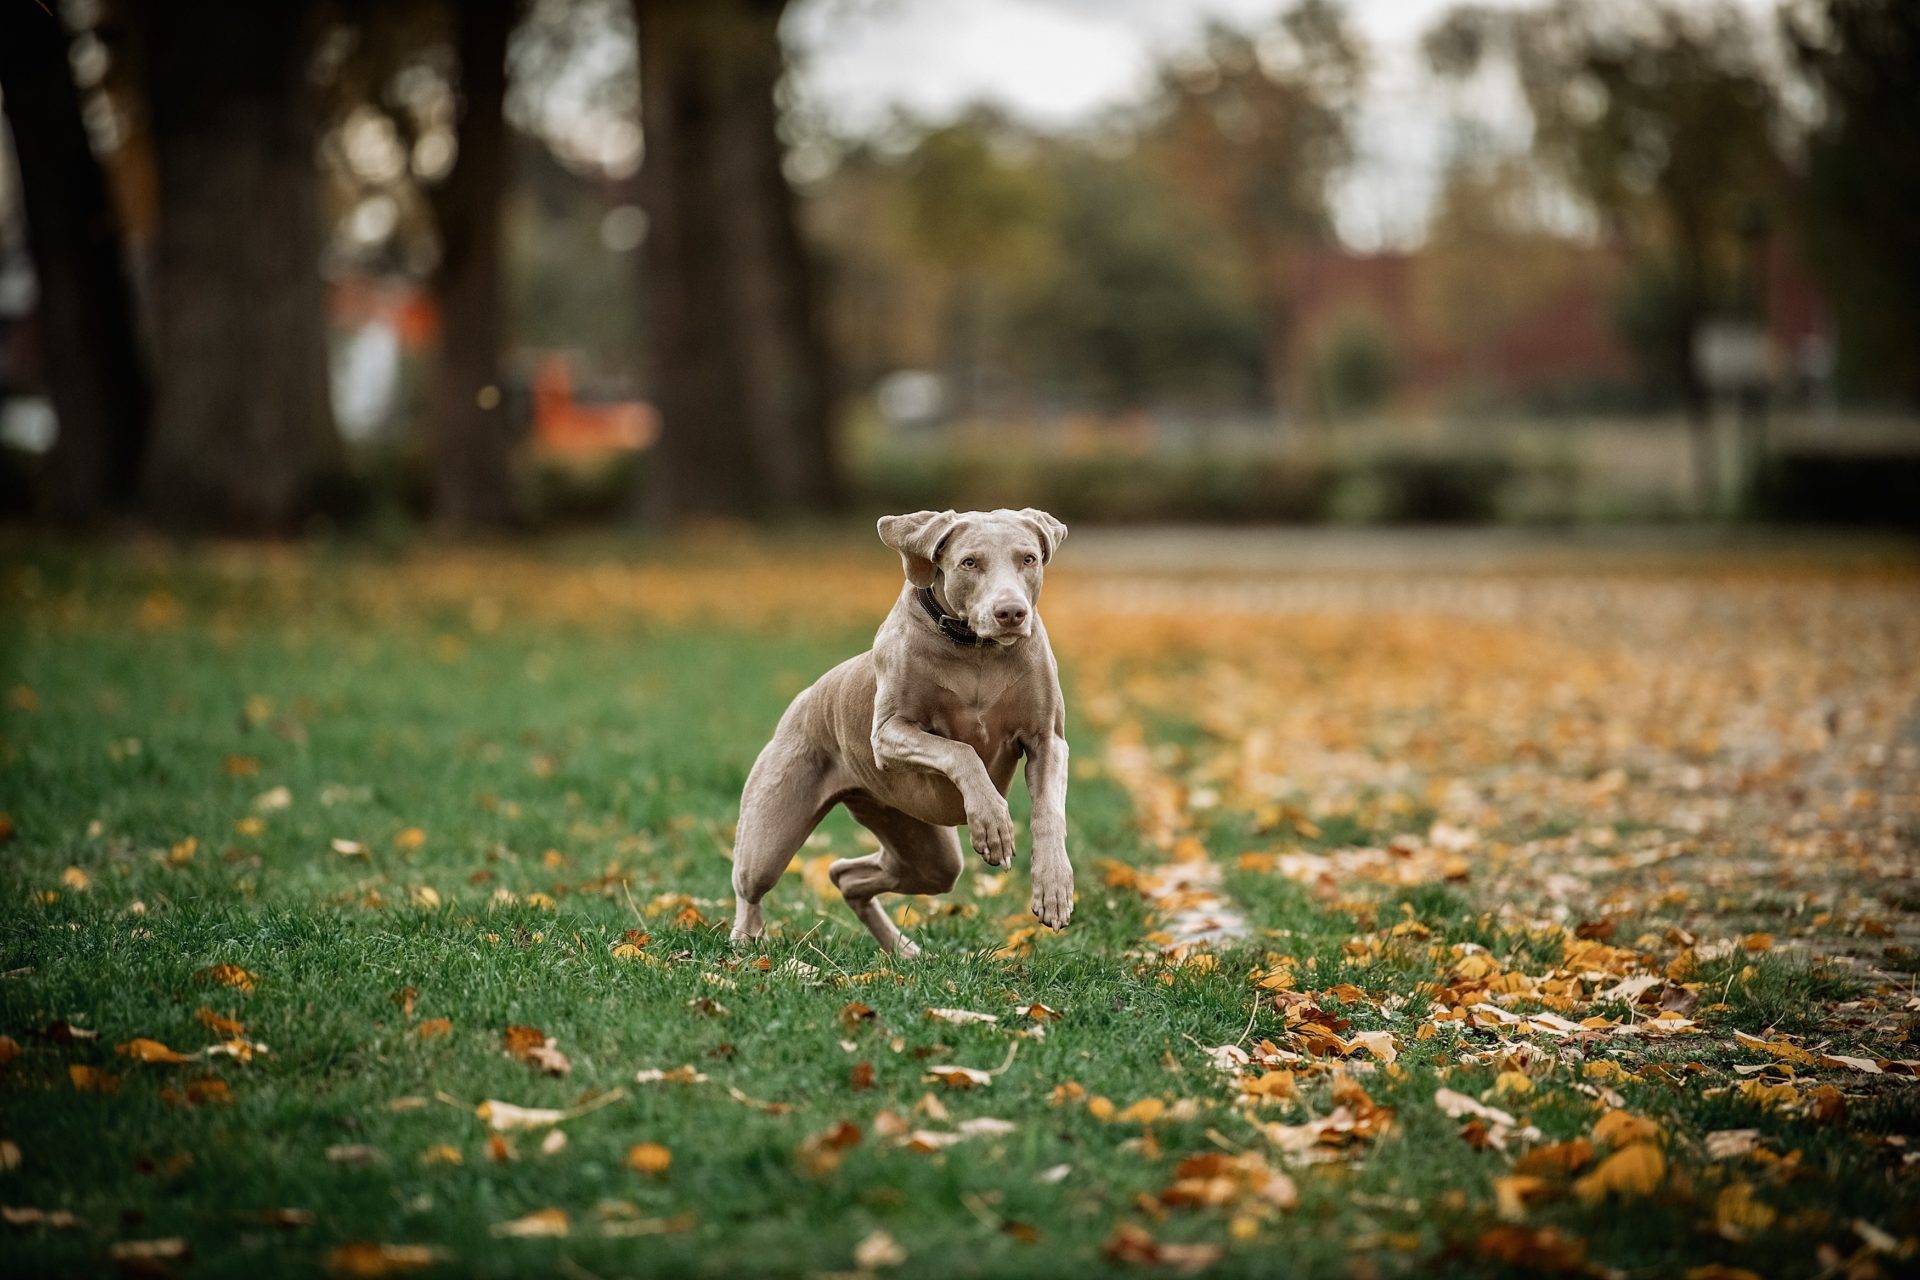 Lotte in action - wie man sieht, ist sie kein Schoßhund, sondern liebt Bewegung. Und zwar mehrmals am Tag. Foto: Andreas Endermann